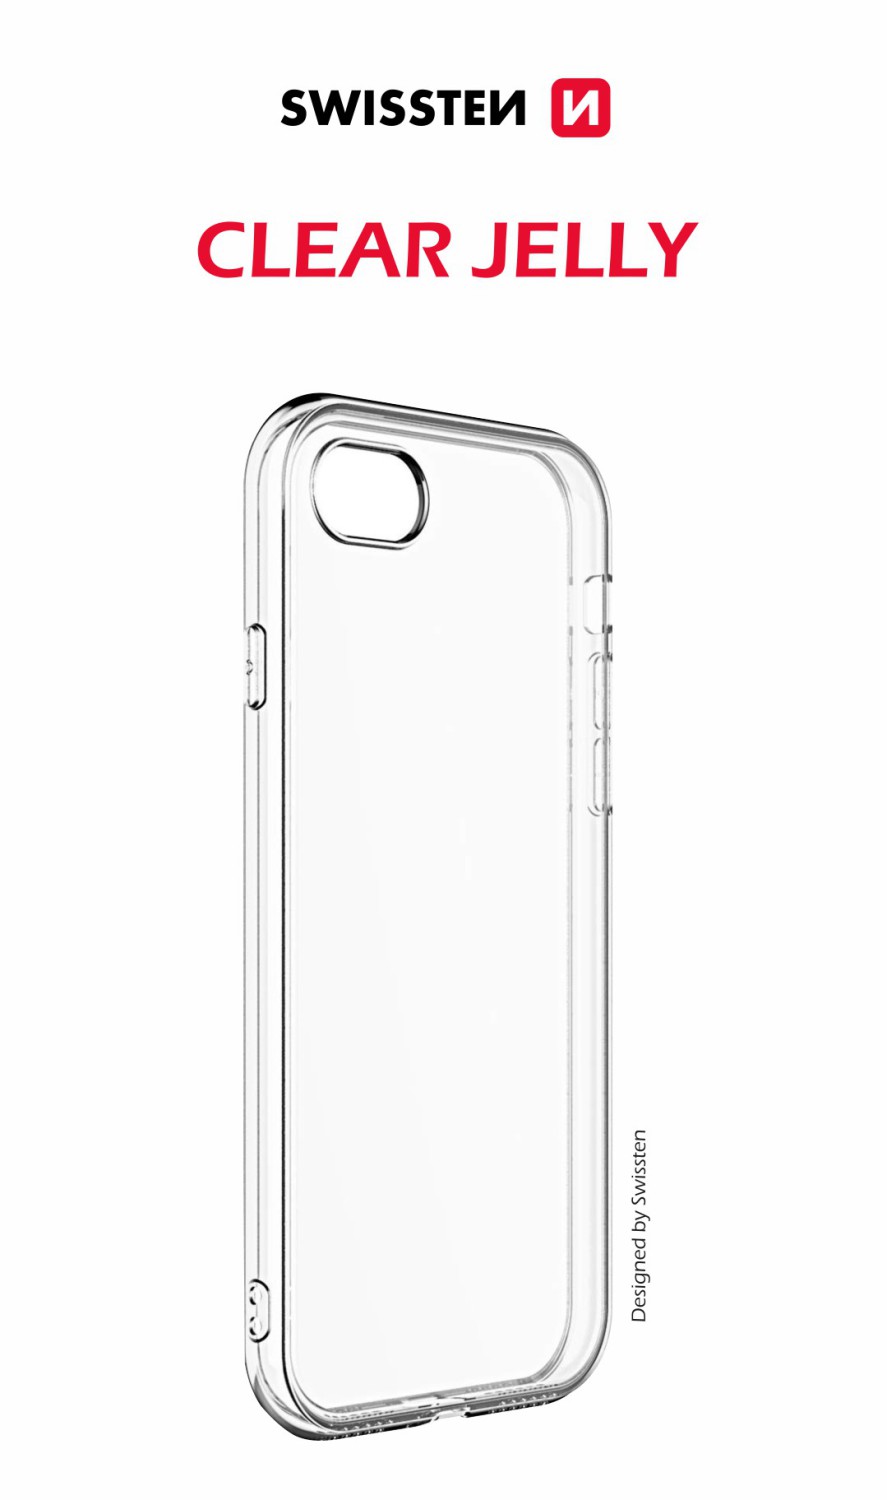 Silikonové pouzdro Clear Jelly pro Apple iPhone 14 Pro, transparentní